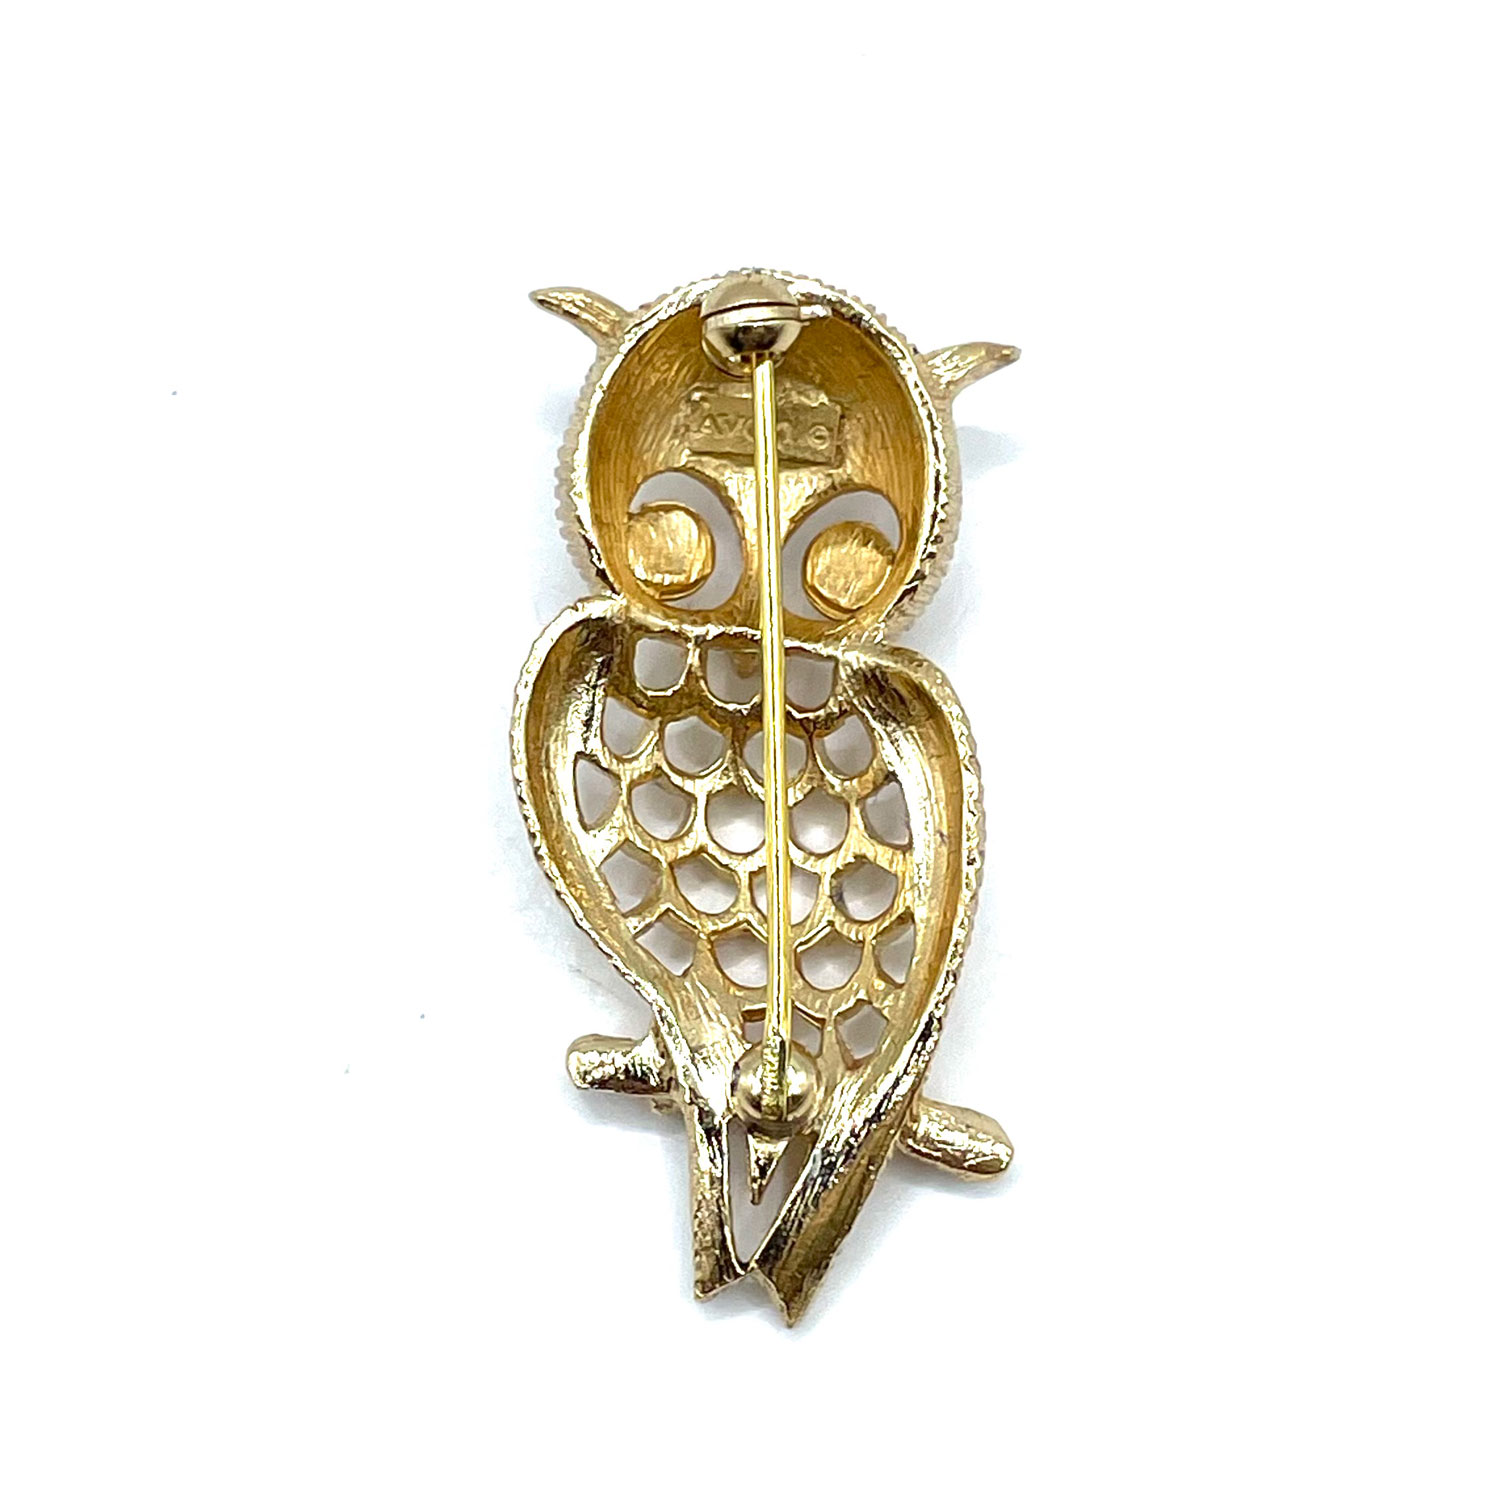 Avon owl brooch